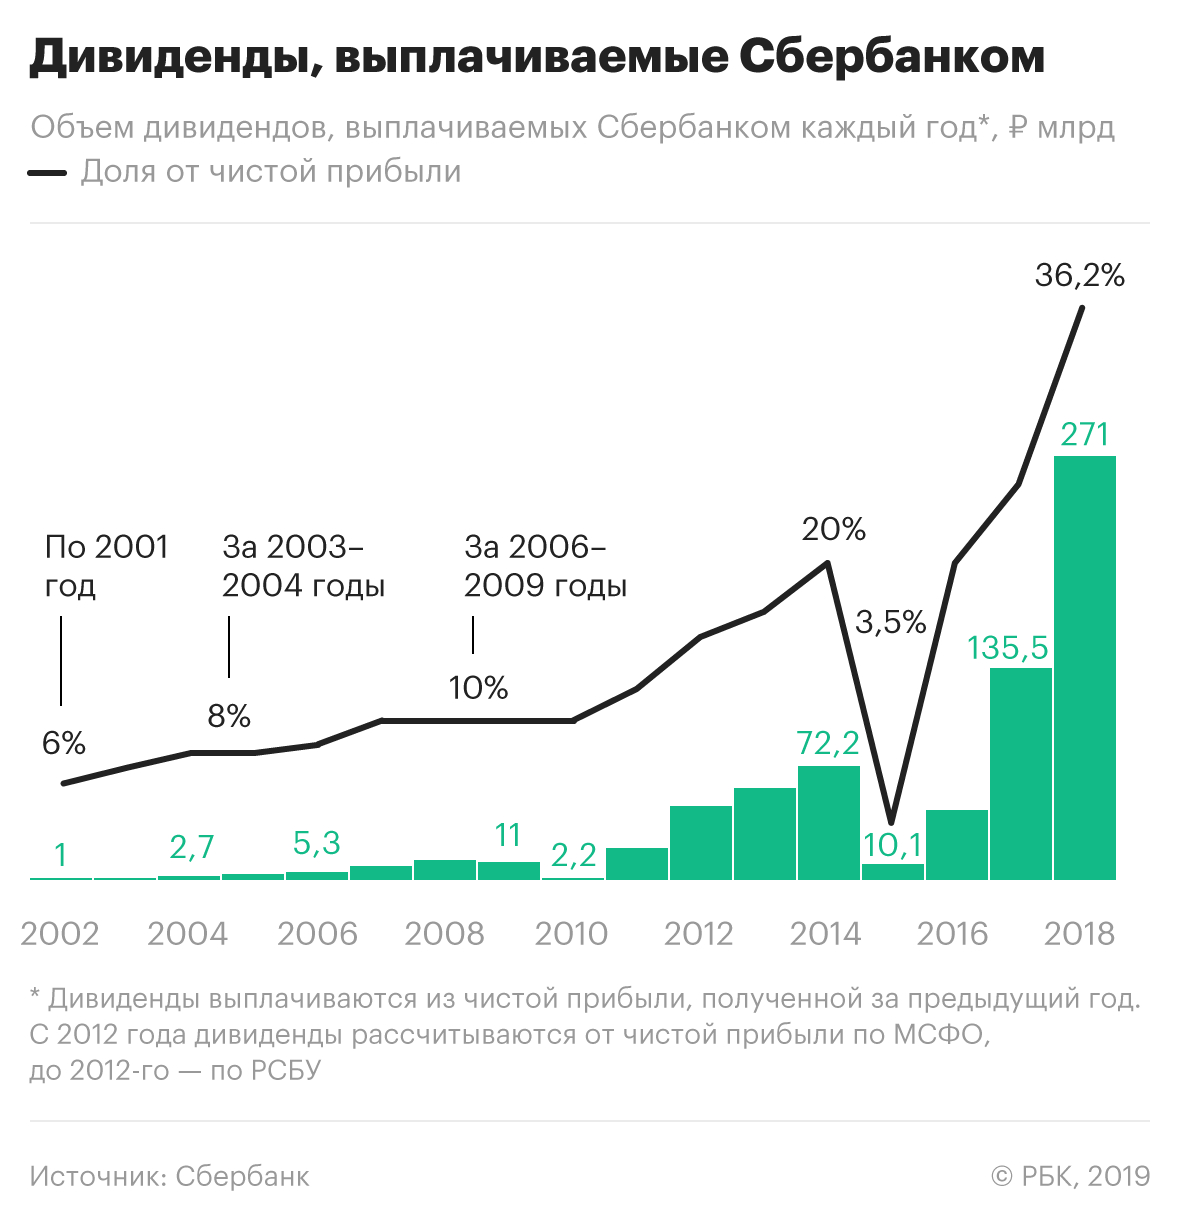 Сбербанк стал рекордсменом по дивидендам среди российских компаний